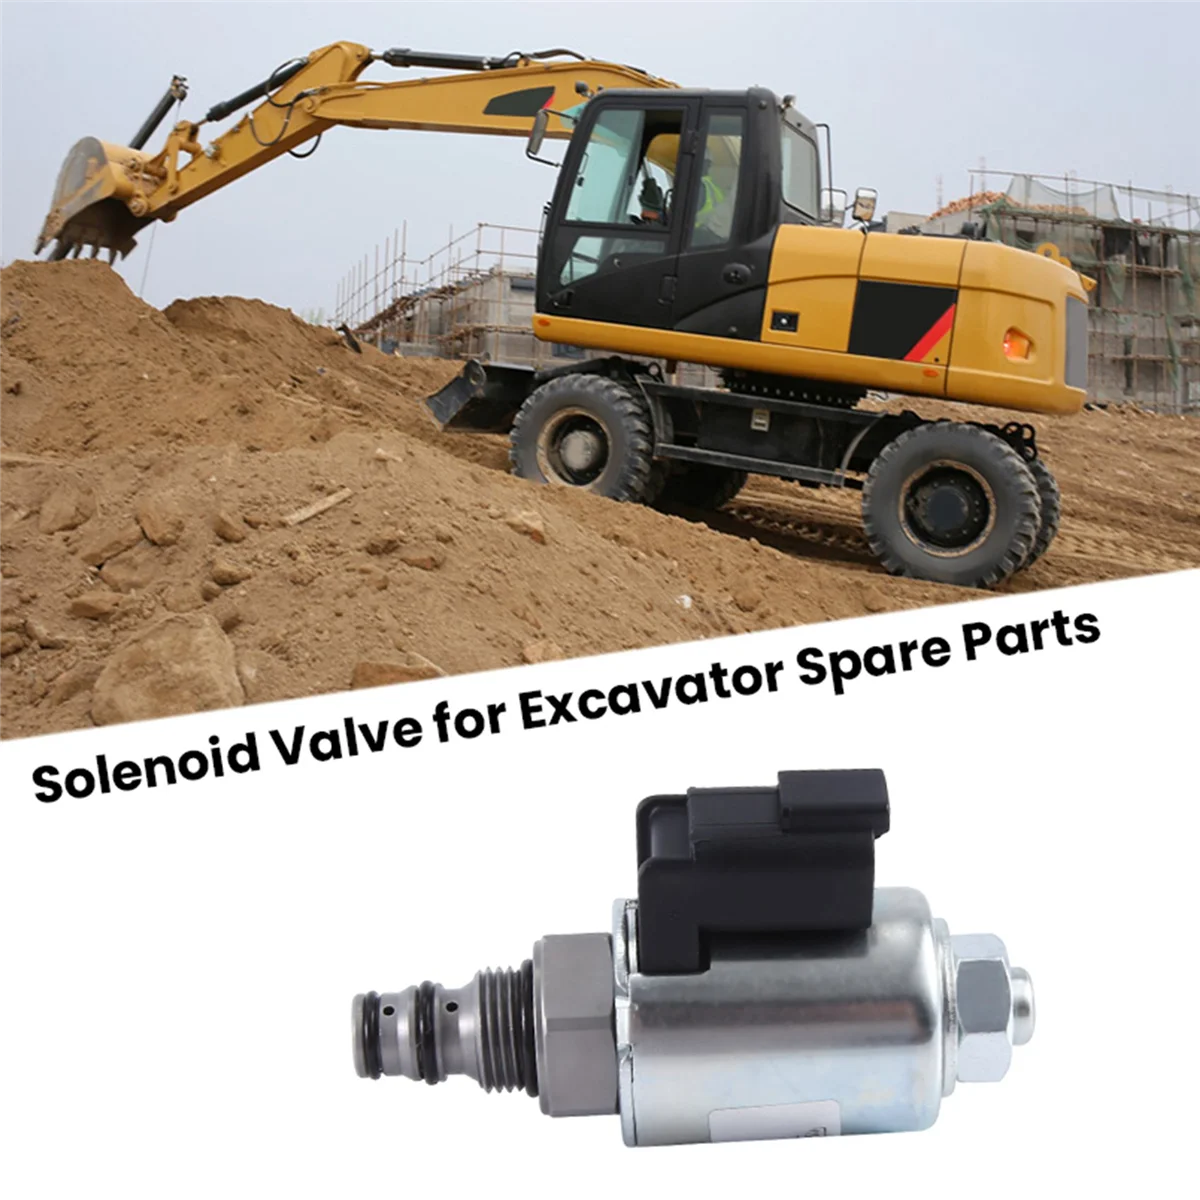 

185-4254 1854254 Solenoid Valve for Excavator Spare Parts 420D 420E 424D 430D 430E 432D 216 216B 226 226B 232 232B